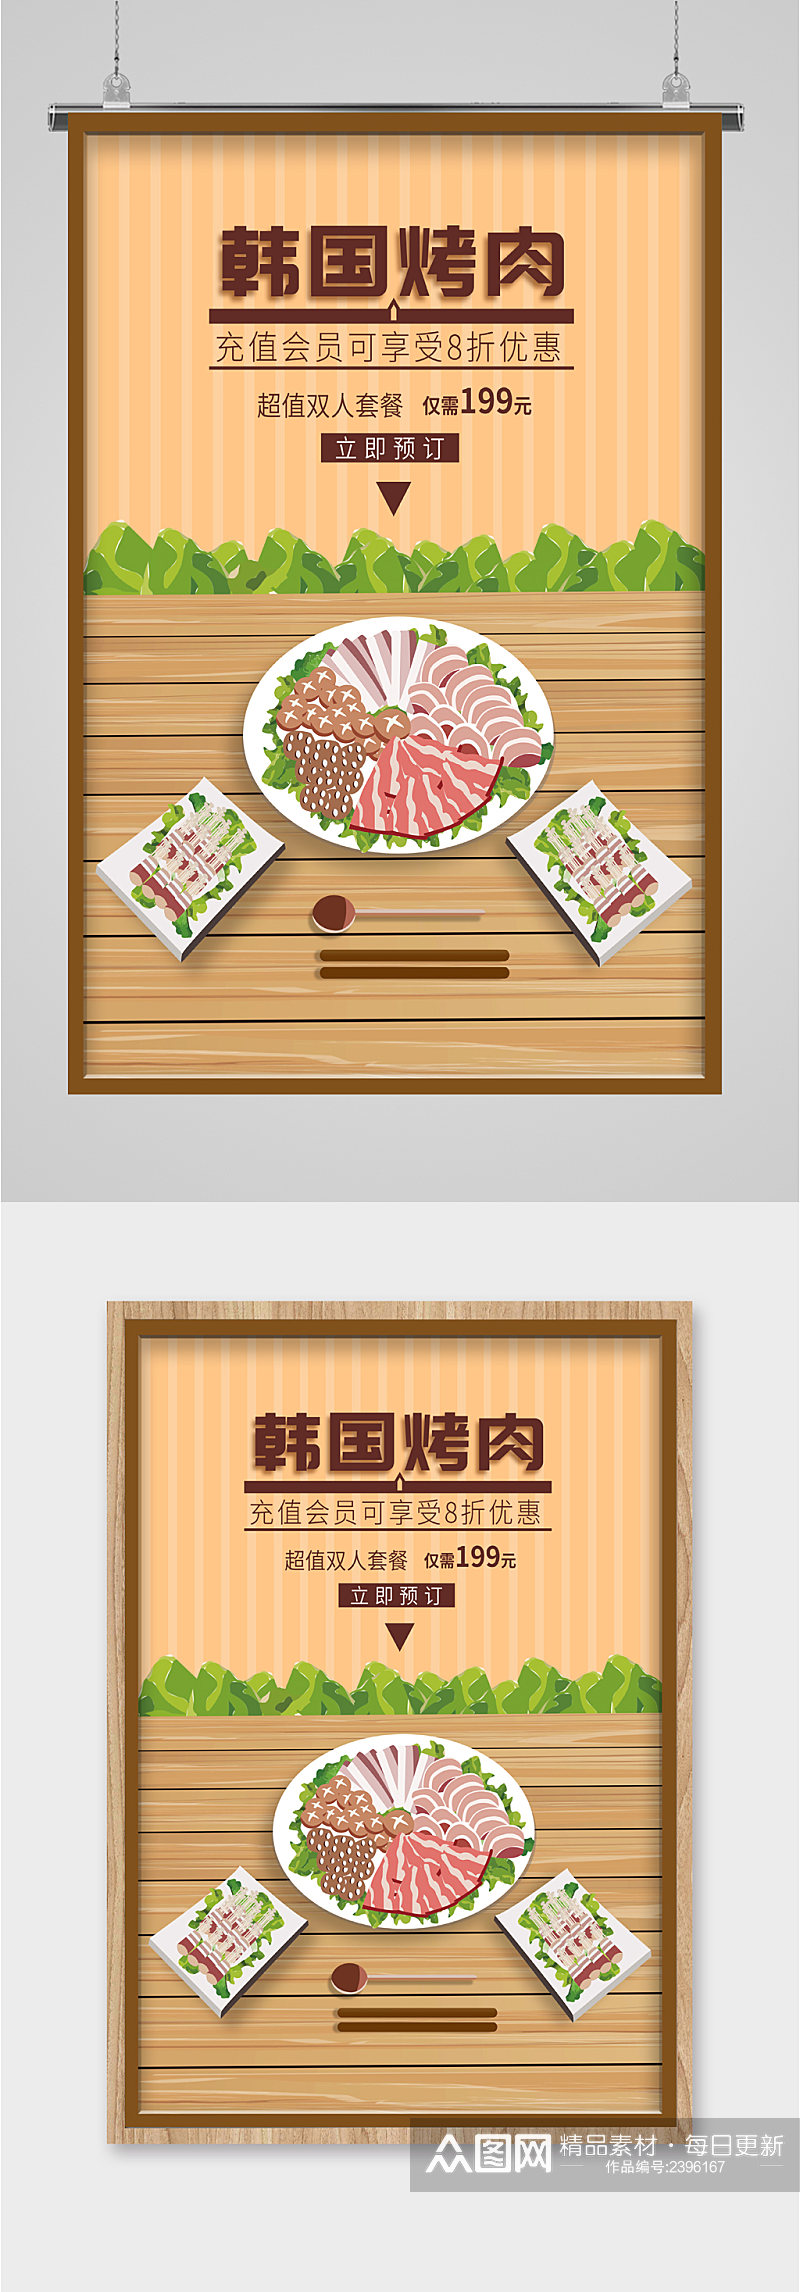 韩国烤肉美食海报素材